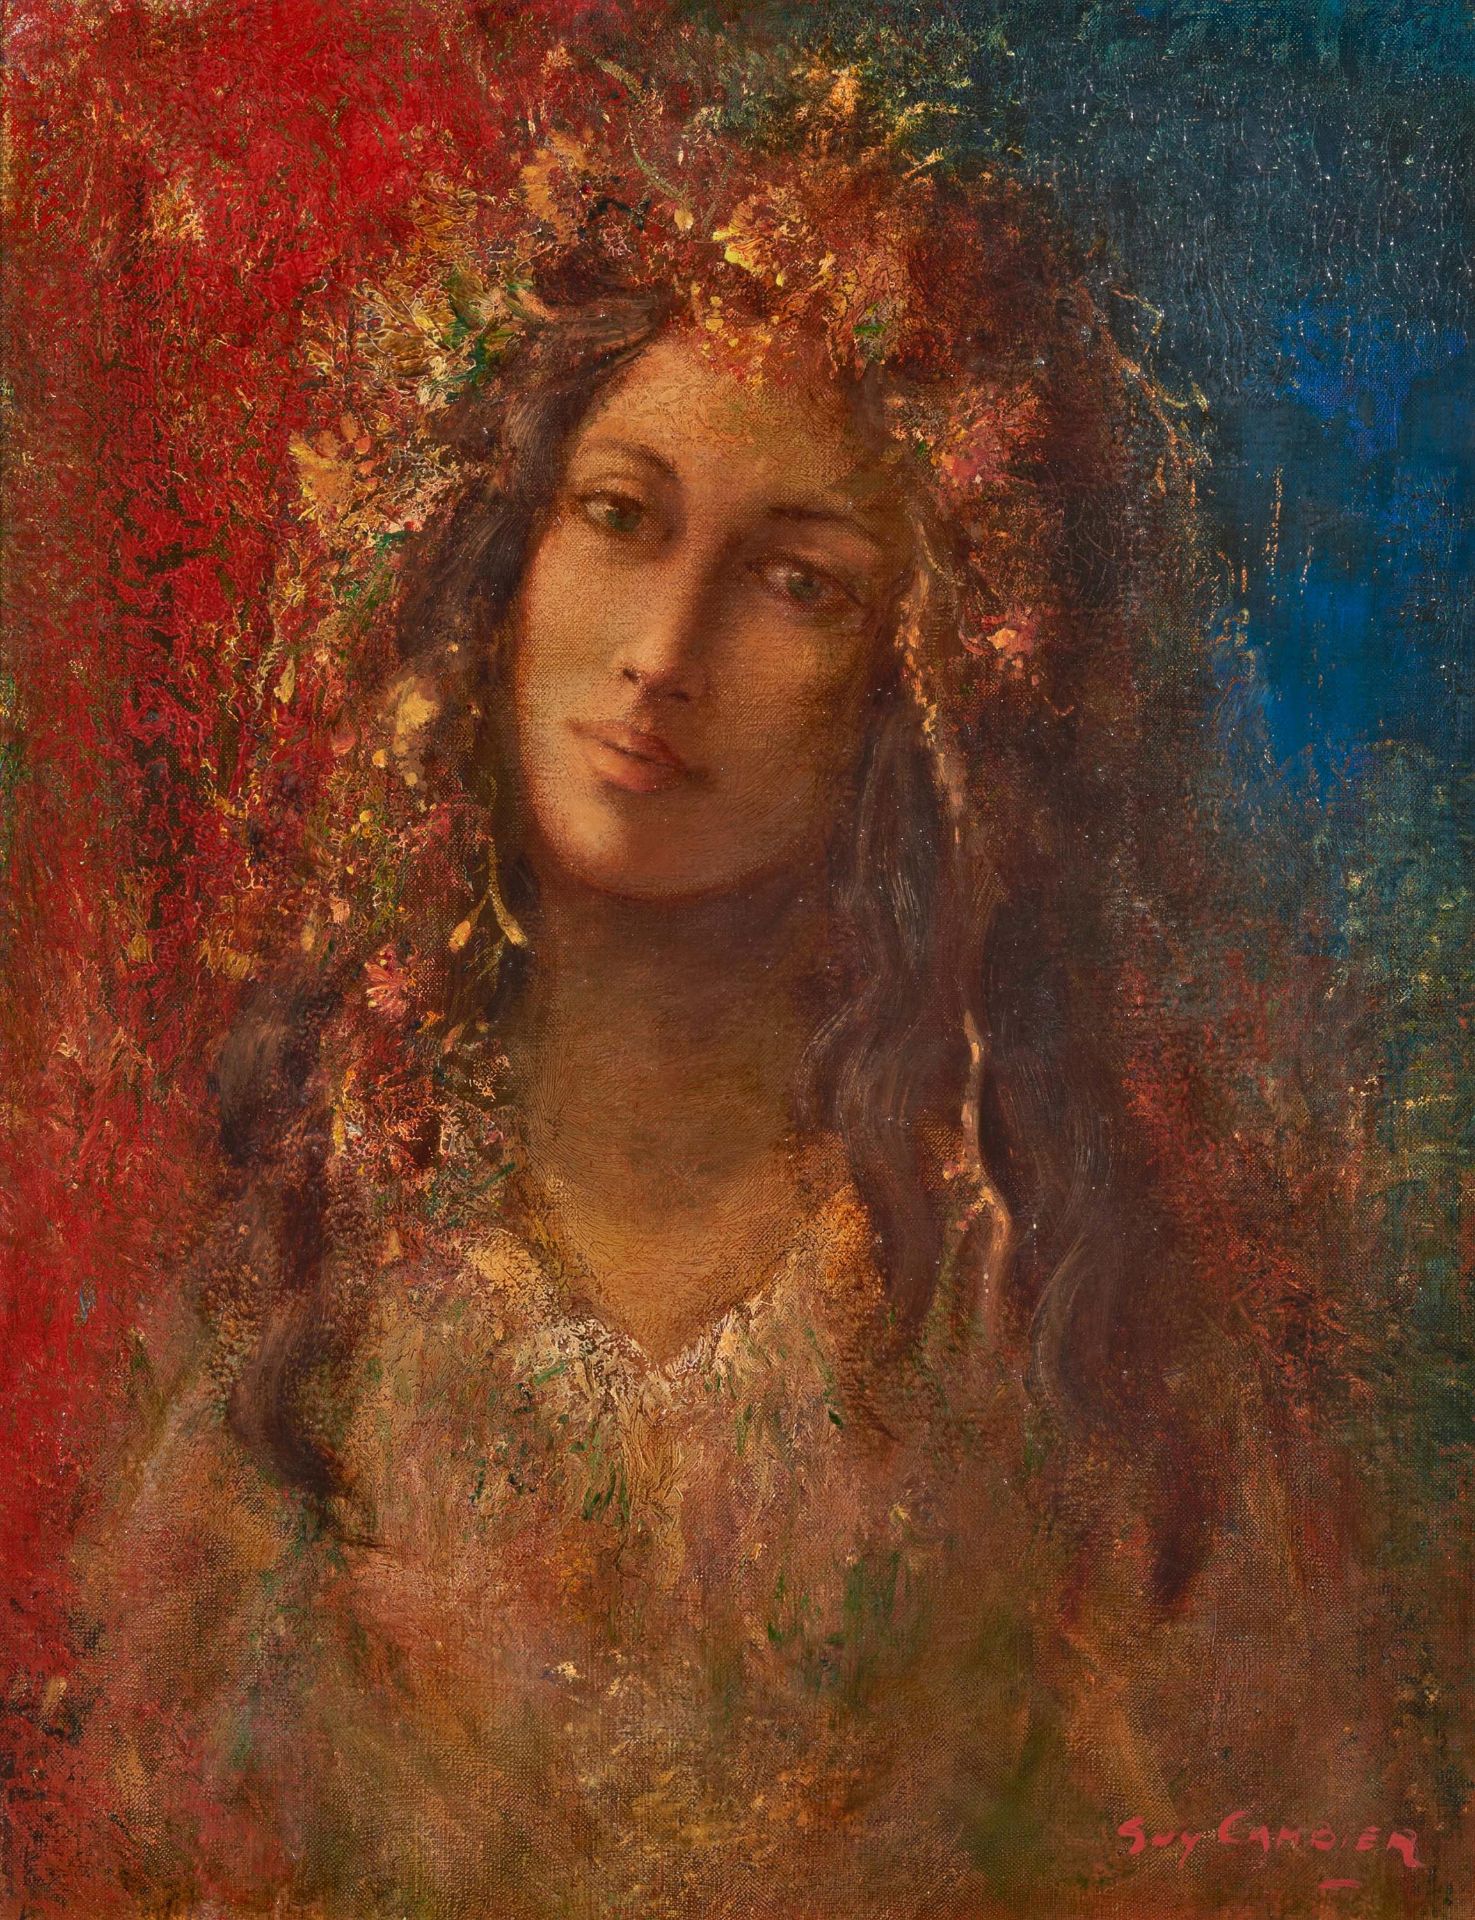 Cambier, Guy. 1923 Uccle. Junge Frau mit Blumen im Haar. Öl auf Leinwand. 65 x 50cm. Signiert